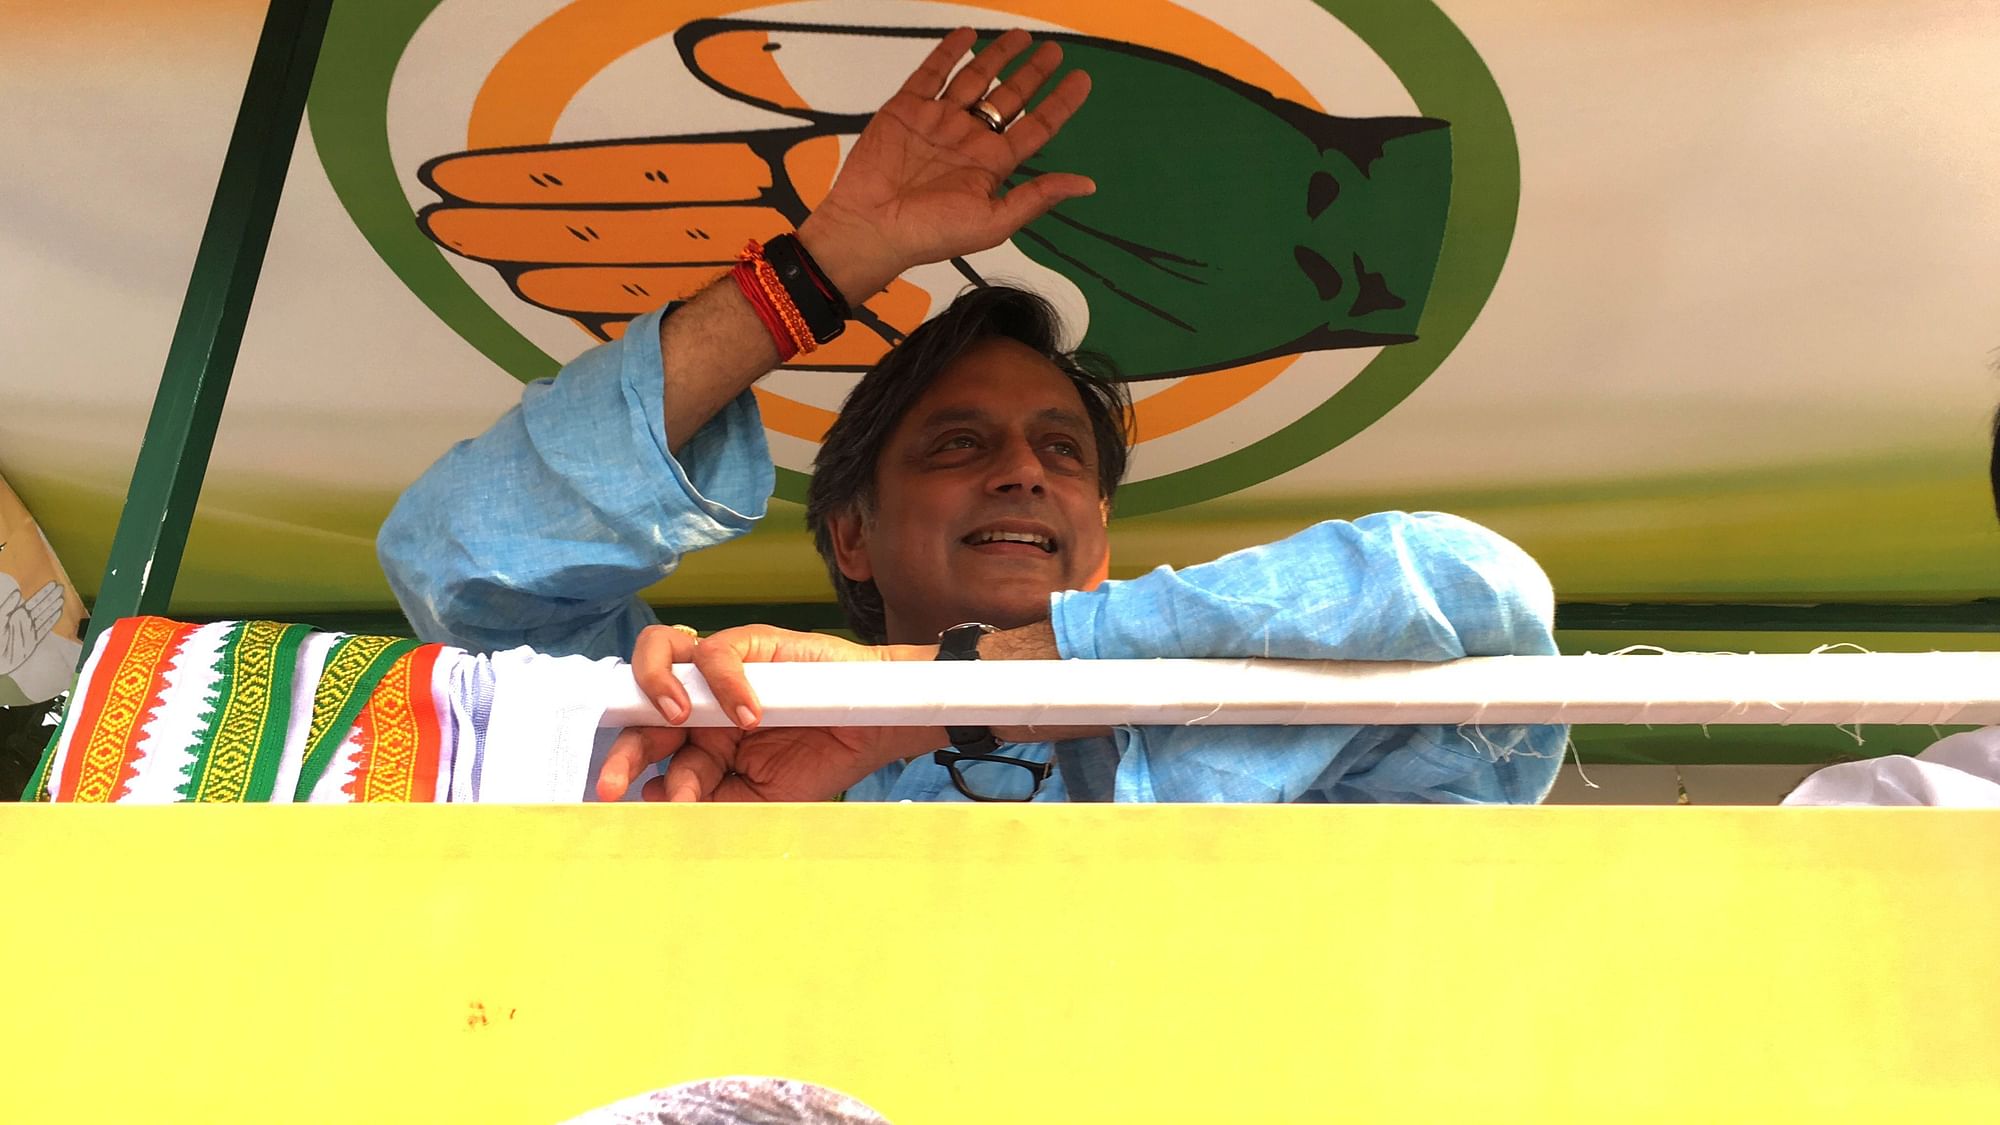 Congress’ Shashi Tharoor says he is confident of winning the Thiruvanthapuram seat this 2019 Lok Sabha polls.